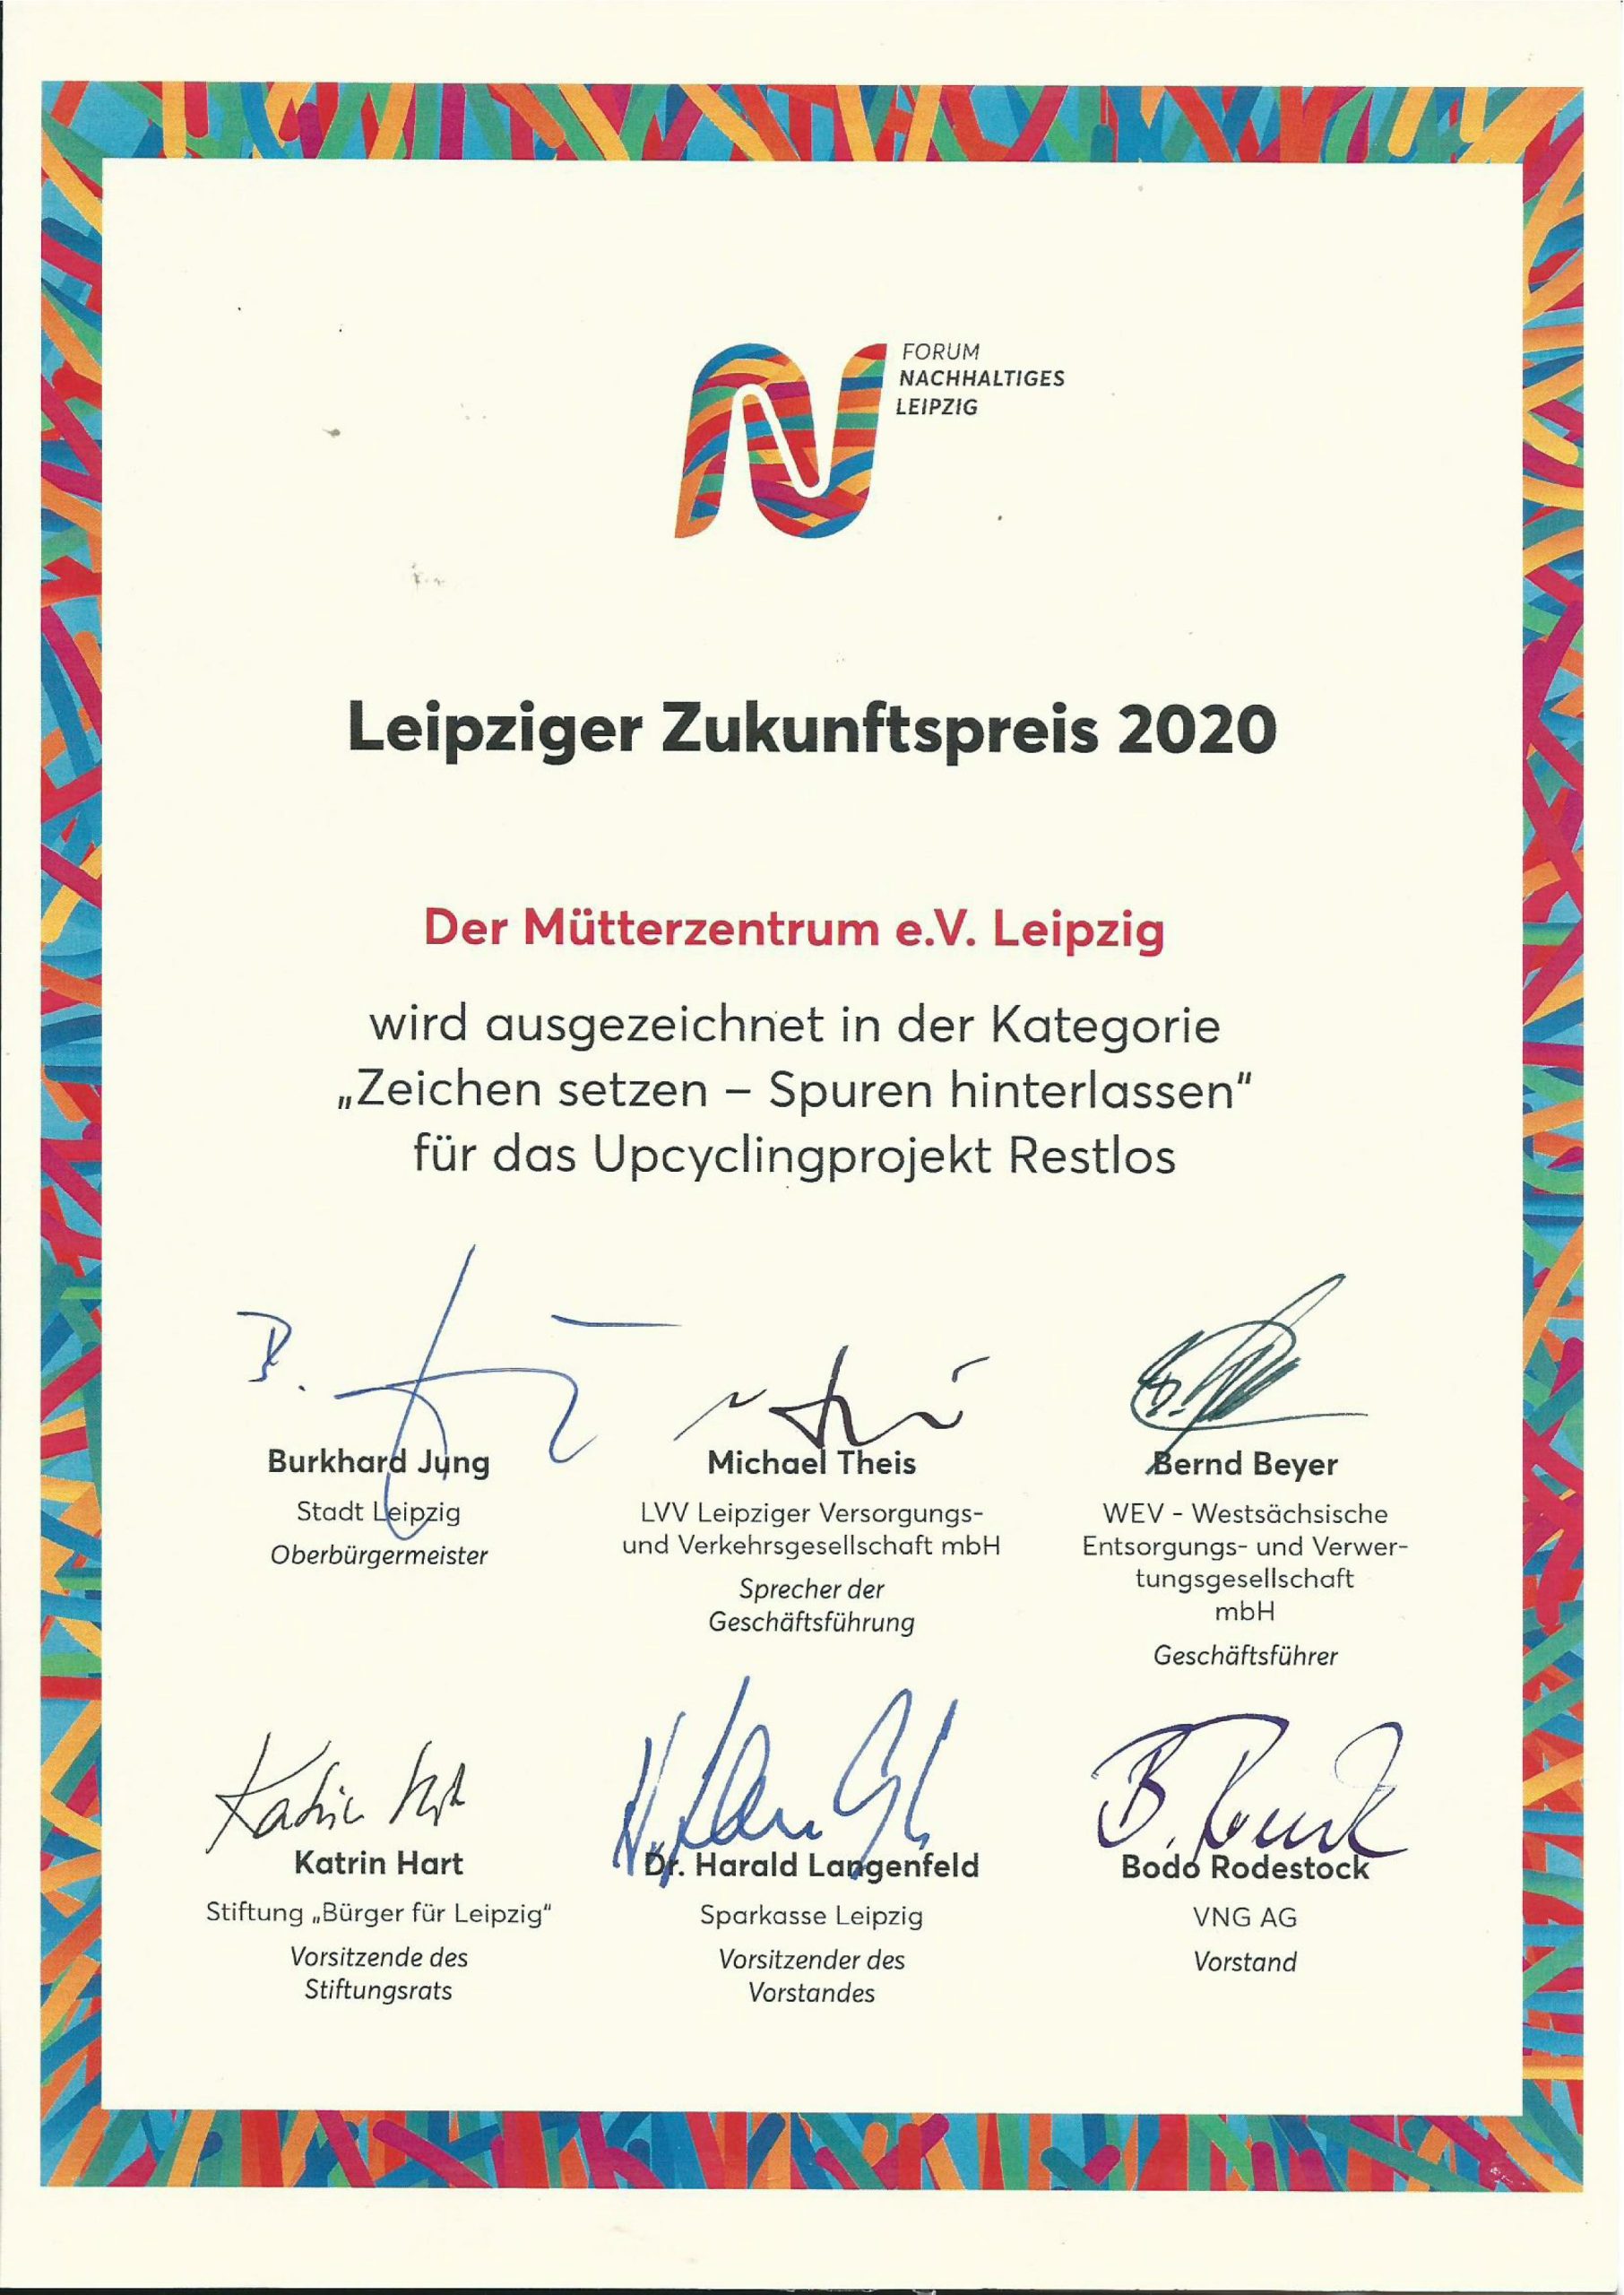 Leipziger Zukunftspreis 2020 scaled - Mütterzentrum e.V. Leipzig